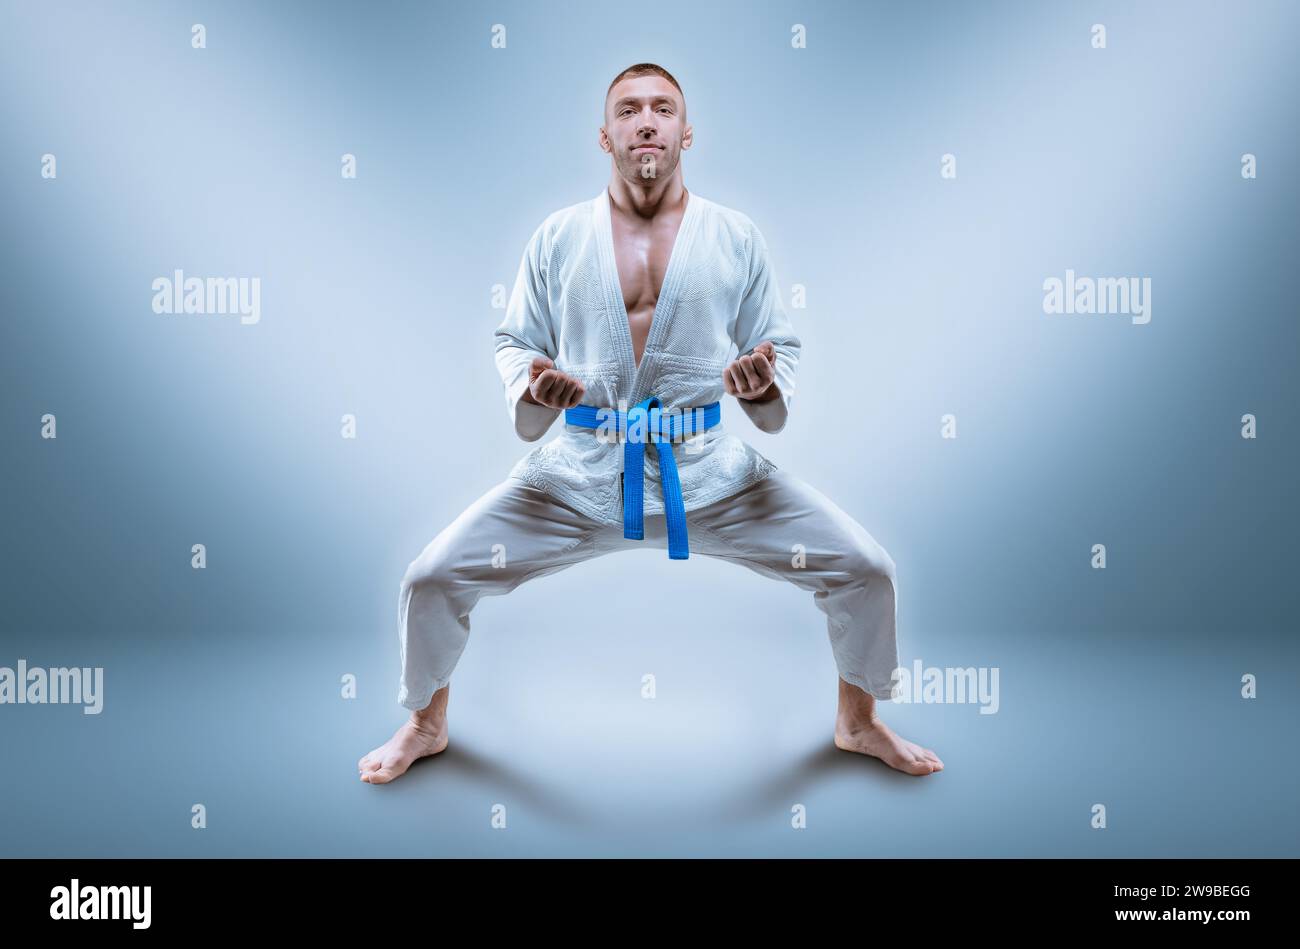 Professioneller Wrestler trägt einen Kimono. Er bereitet sich darauf vor, die Kata zu demonstrieren. Das Konzept der gemischten Kampfkunst, Karate, Sambo, Judo, Jujitsu. M Stockfoto